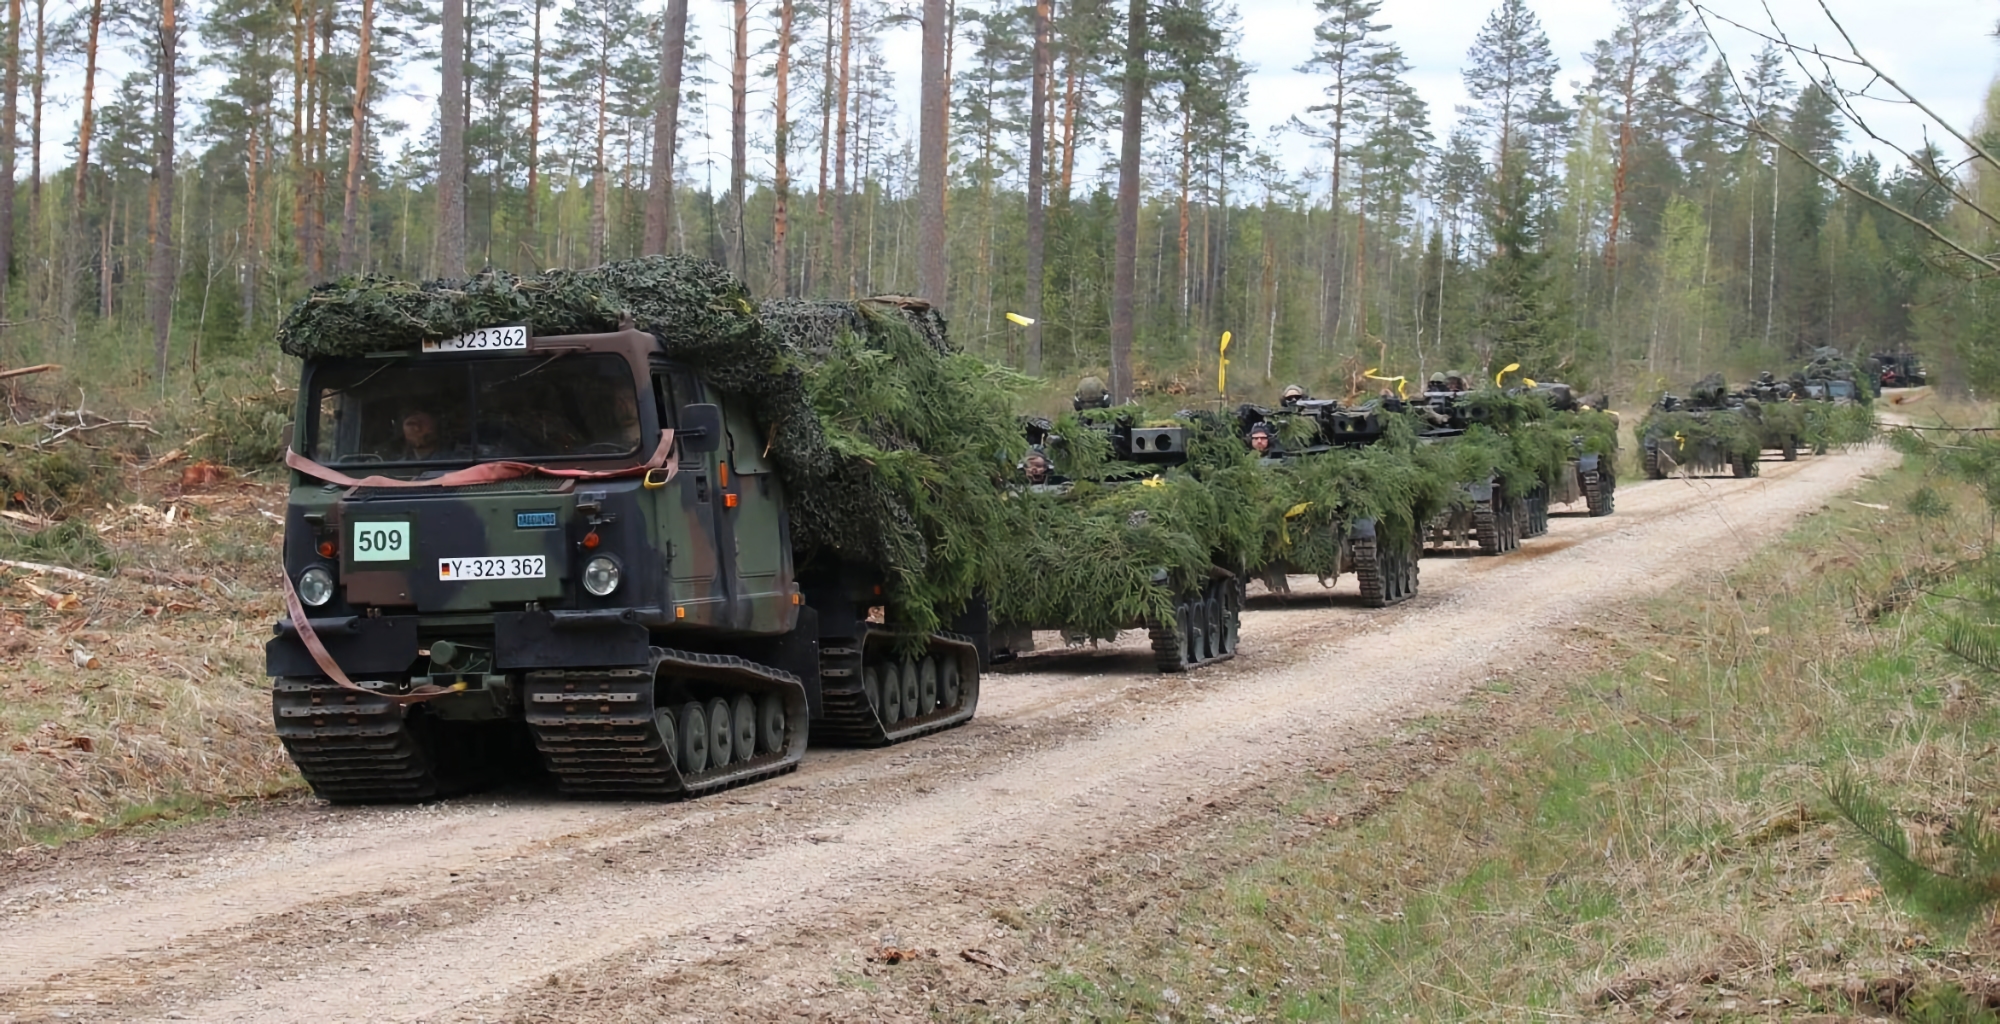 Alemania envía un nuevo paquete de ayuda militar a Ucrania que incluye vehículos todo terreno Bandvagn 206 y otras armas